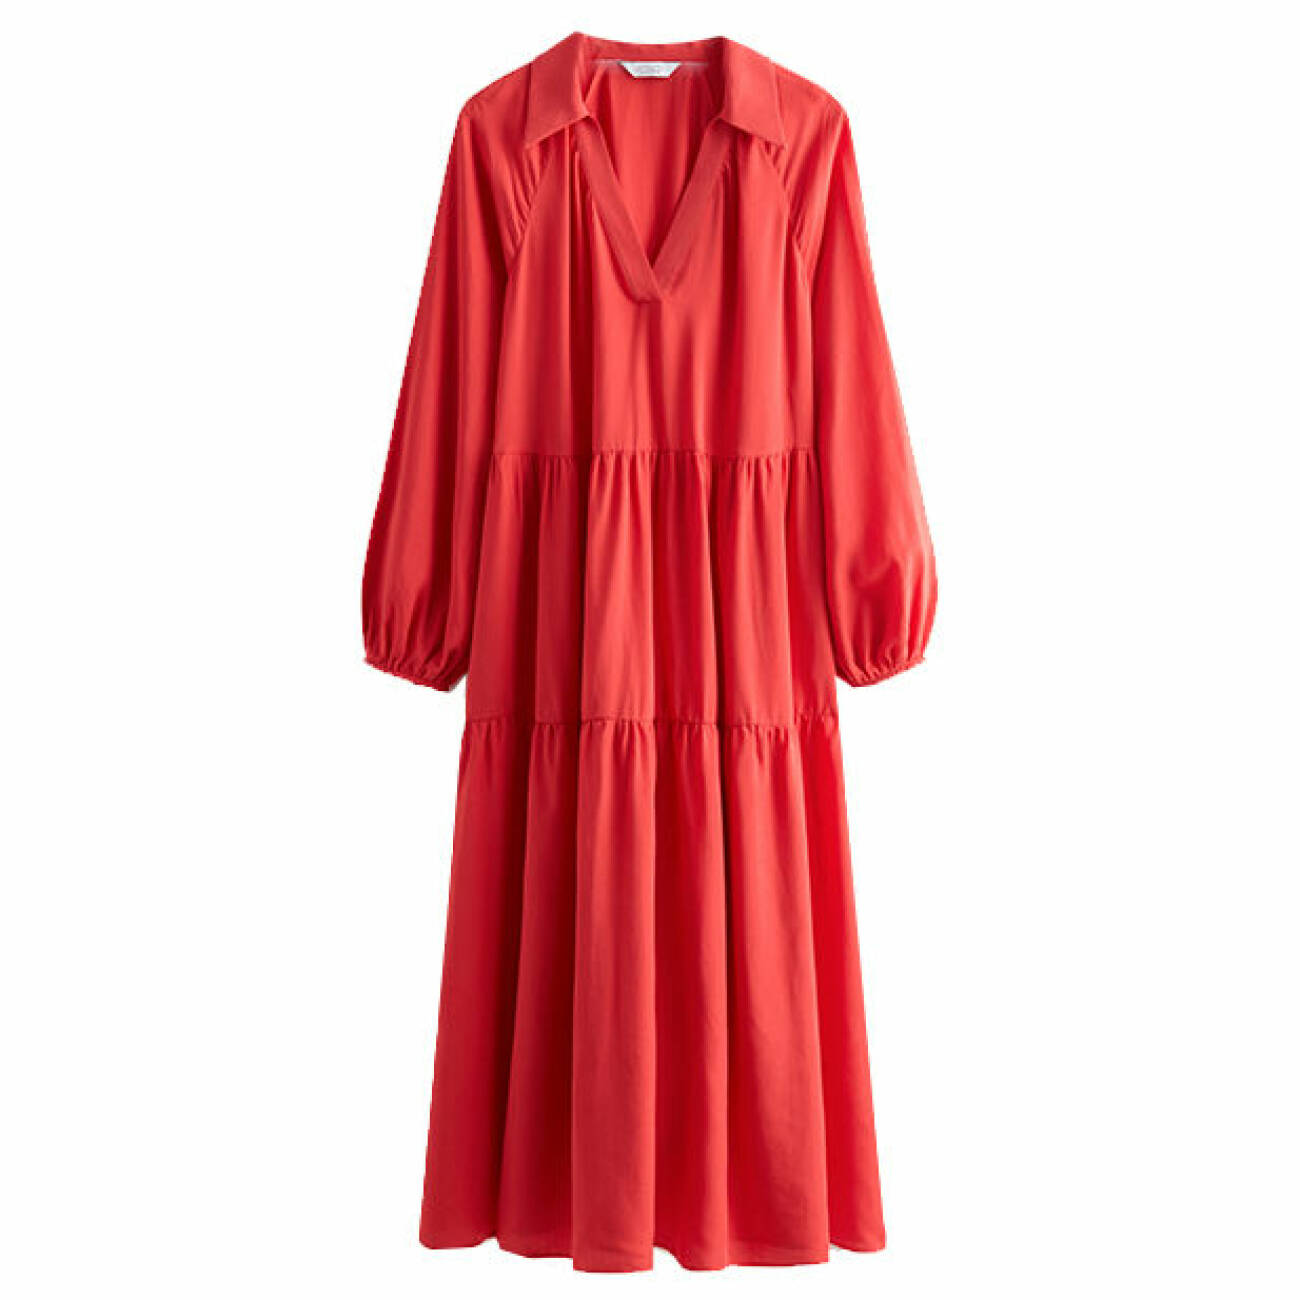 röd klänning till sommarens basgarderob